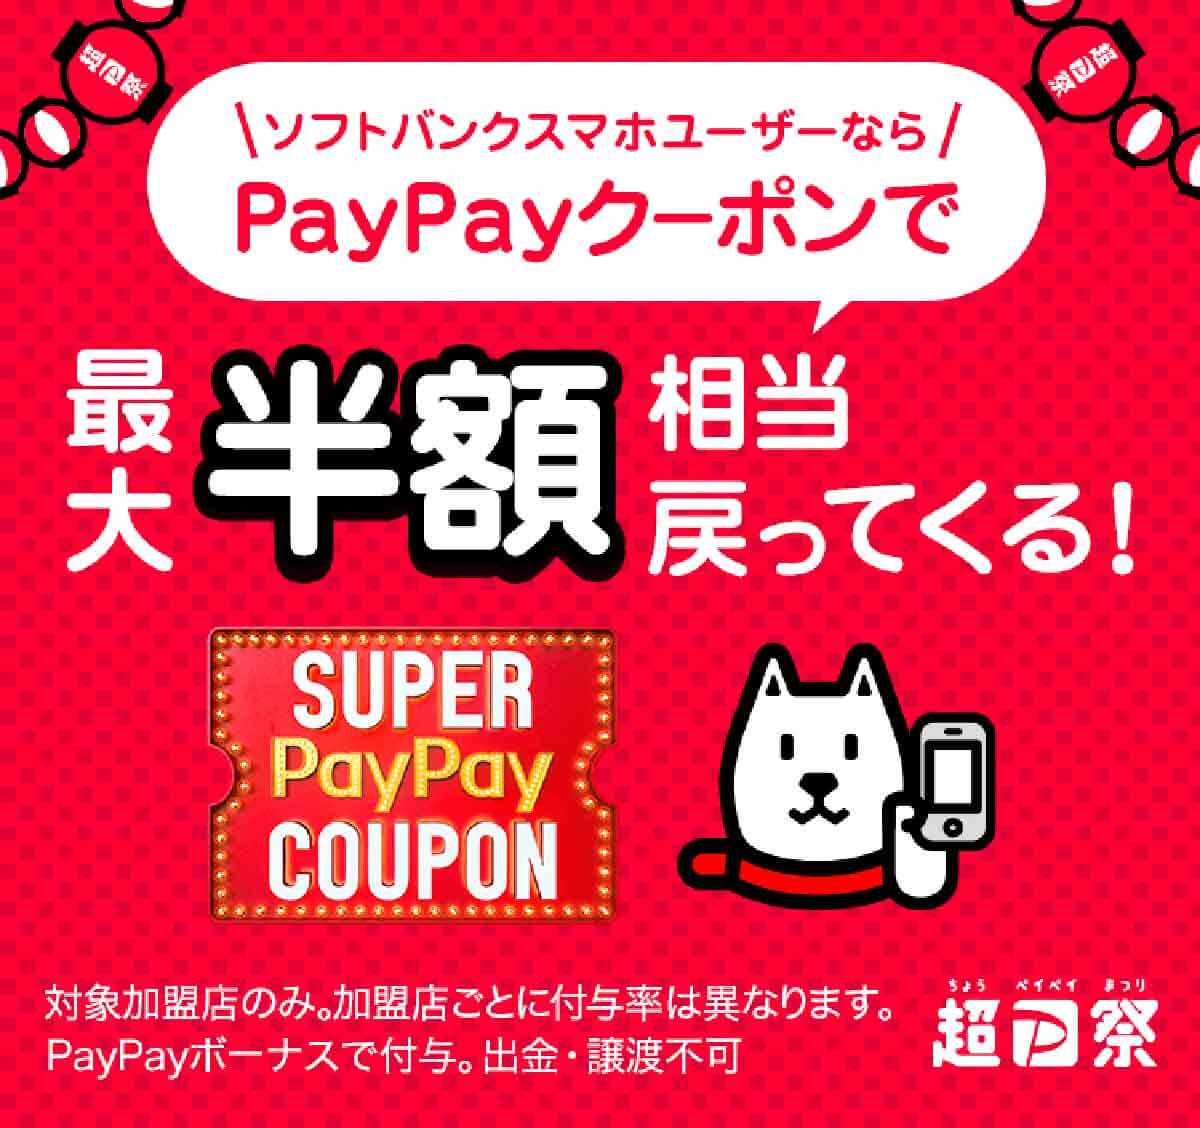 【超PayPay祭】ソフトバンクプレミアム「スーパーPayPayクーポン」